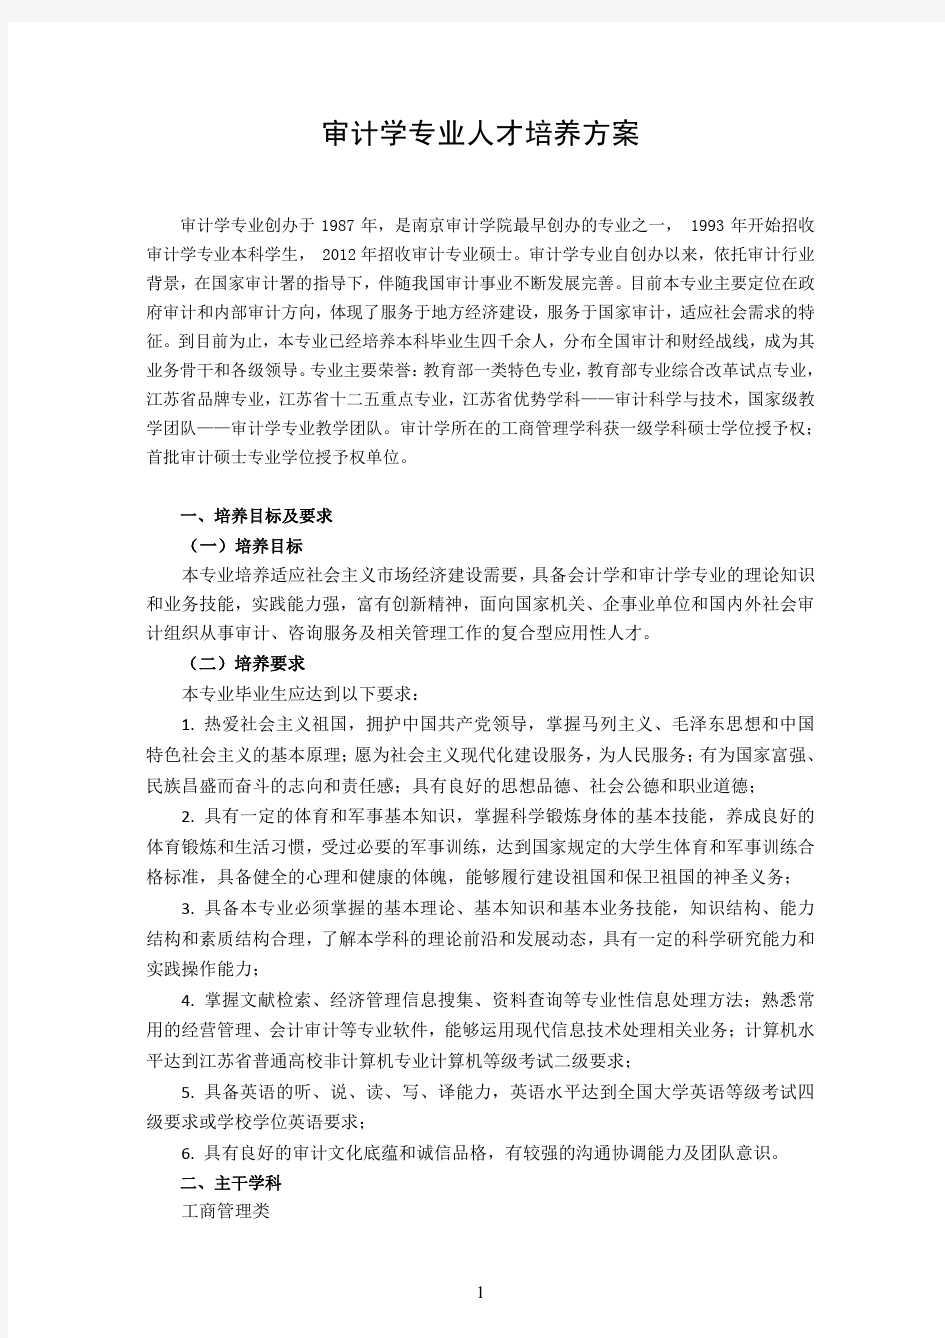 南京审计大学【审计学专业】人才培养方案(2015版)